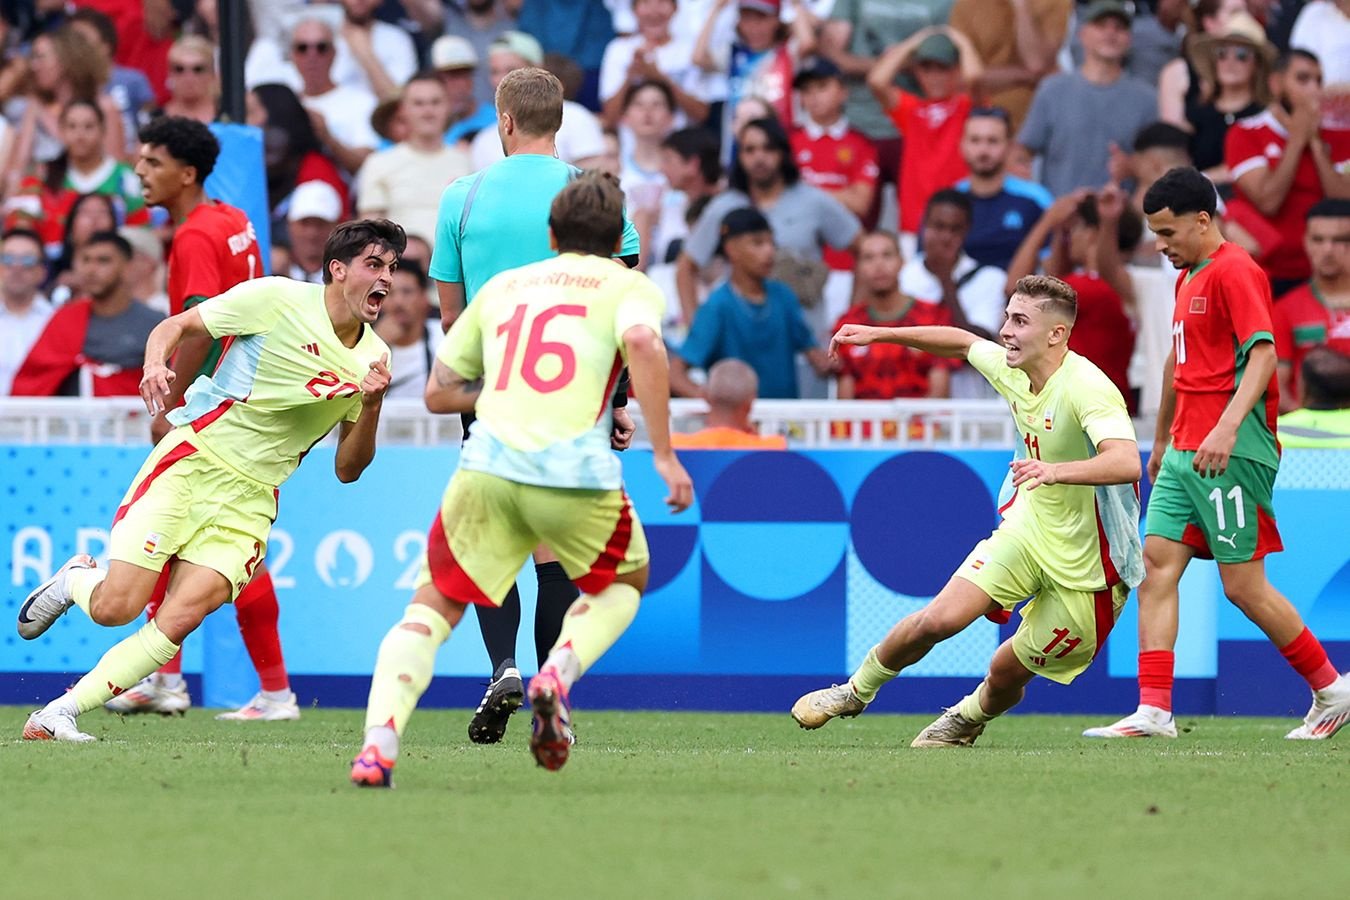 Испания снова в финале! Ярко камбэкнули на Олимпиаде с голом на последних минутах